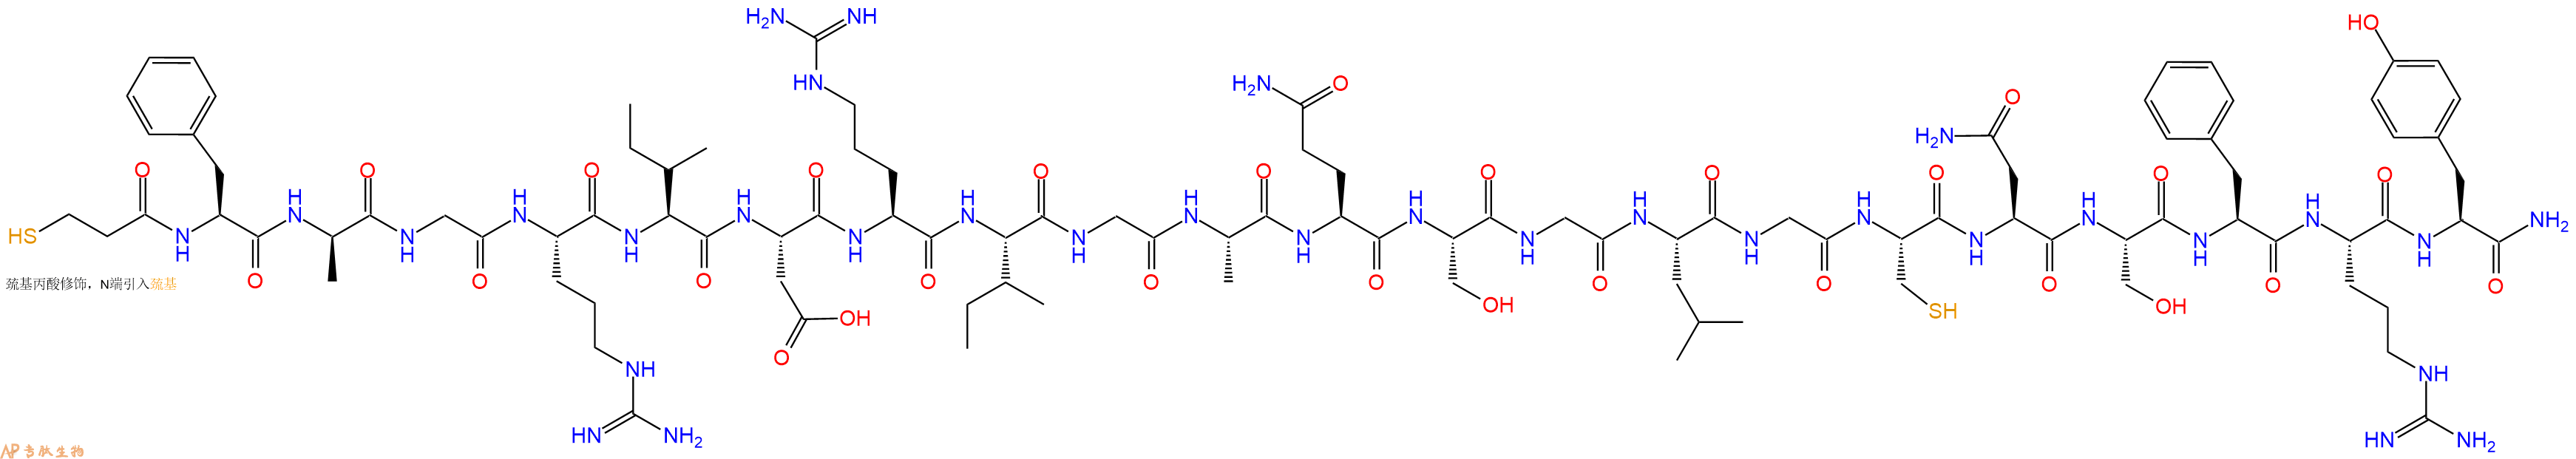 专肽生物产品[Mpr7, DAla9]ANP(7-28), amide, rat